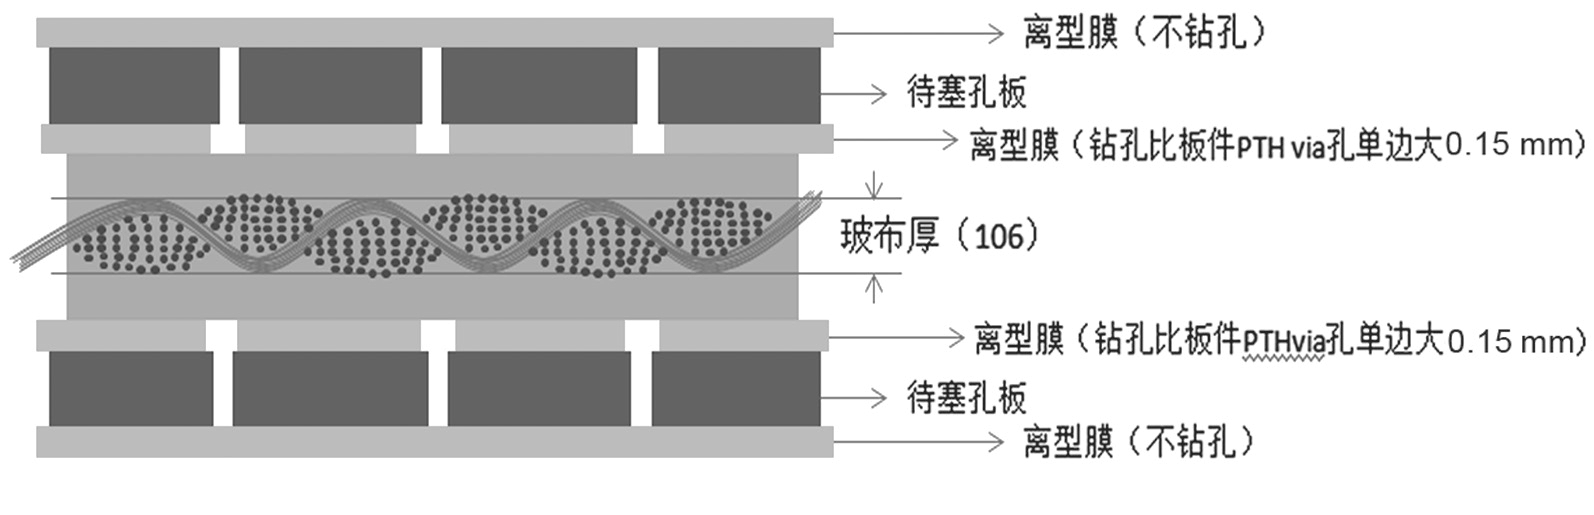 图1 单面热压PP填孔叠构设计示意图